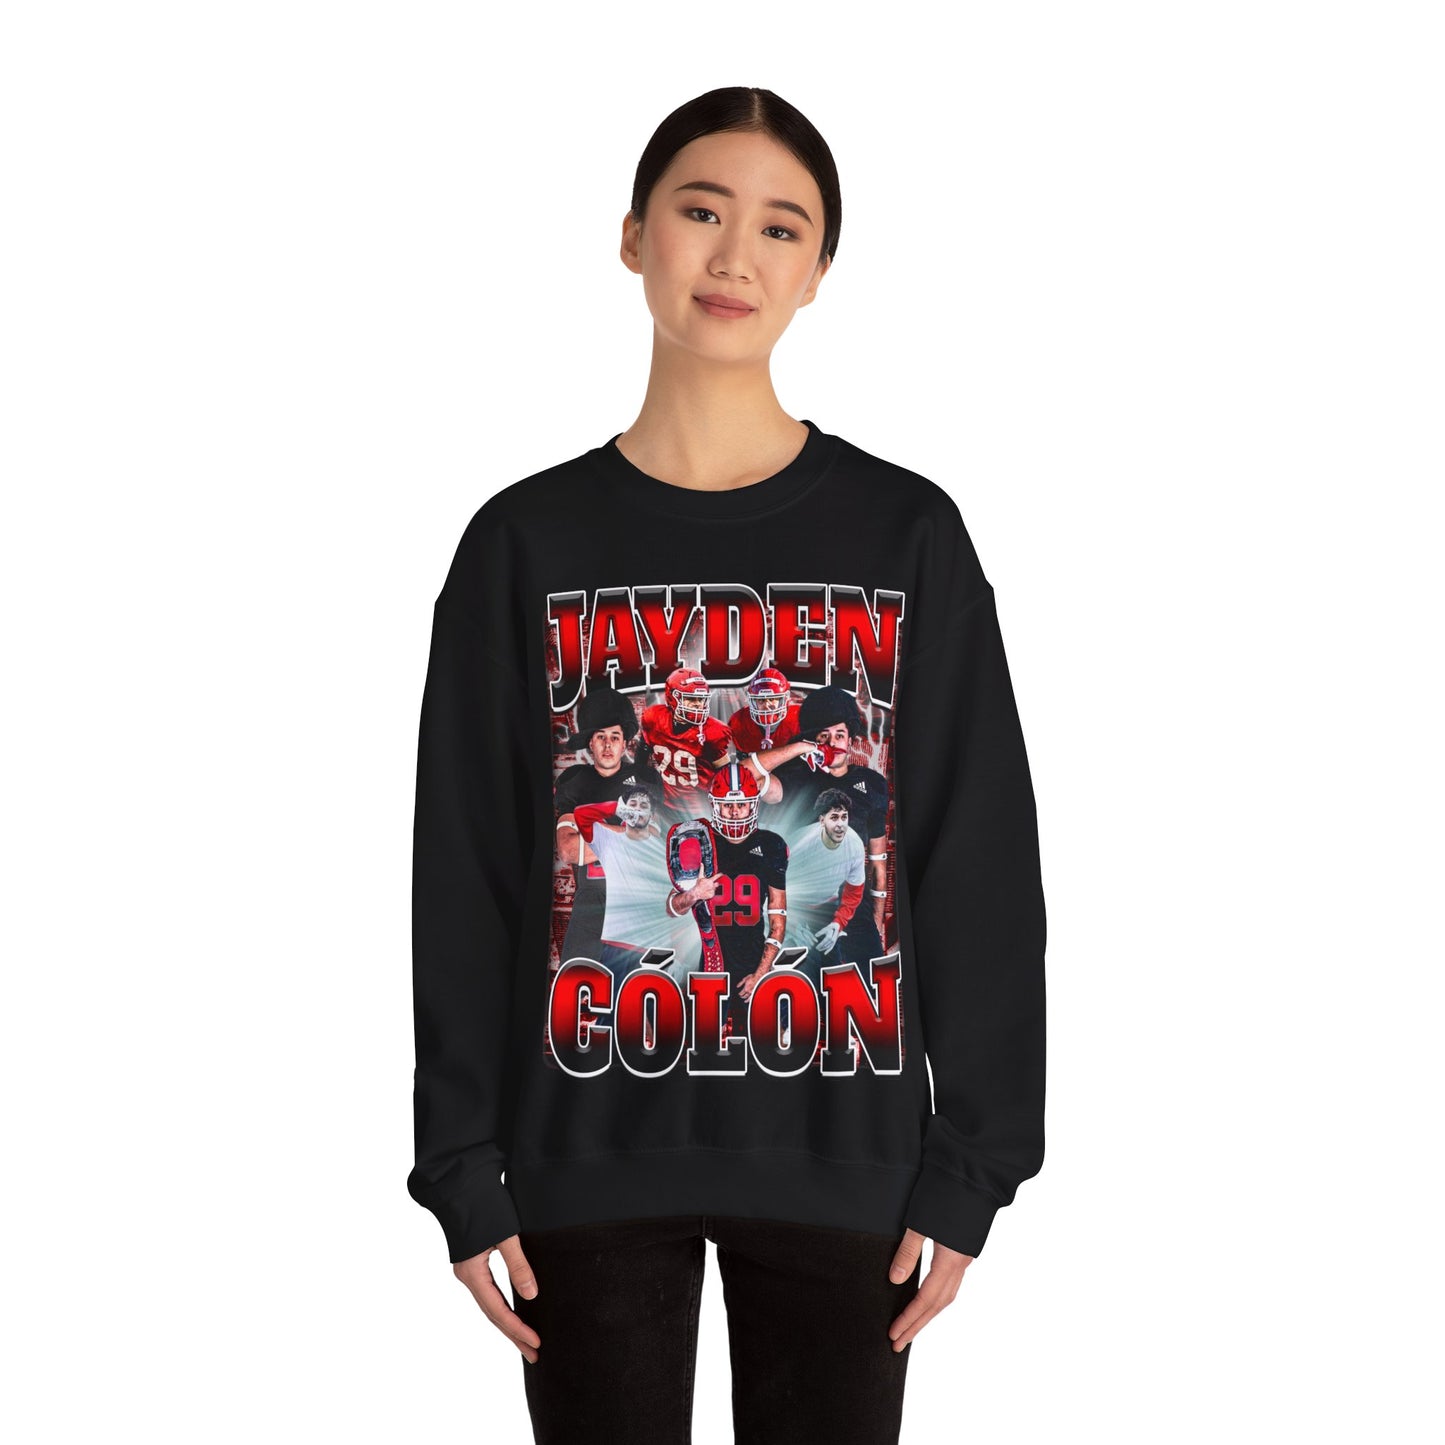 Jayden Colon Crewneck Sweatshirt